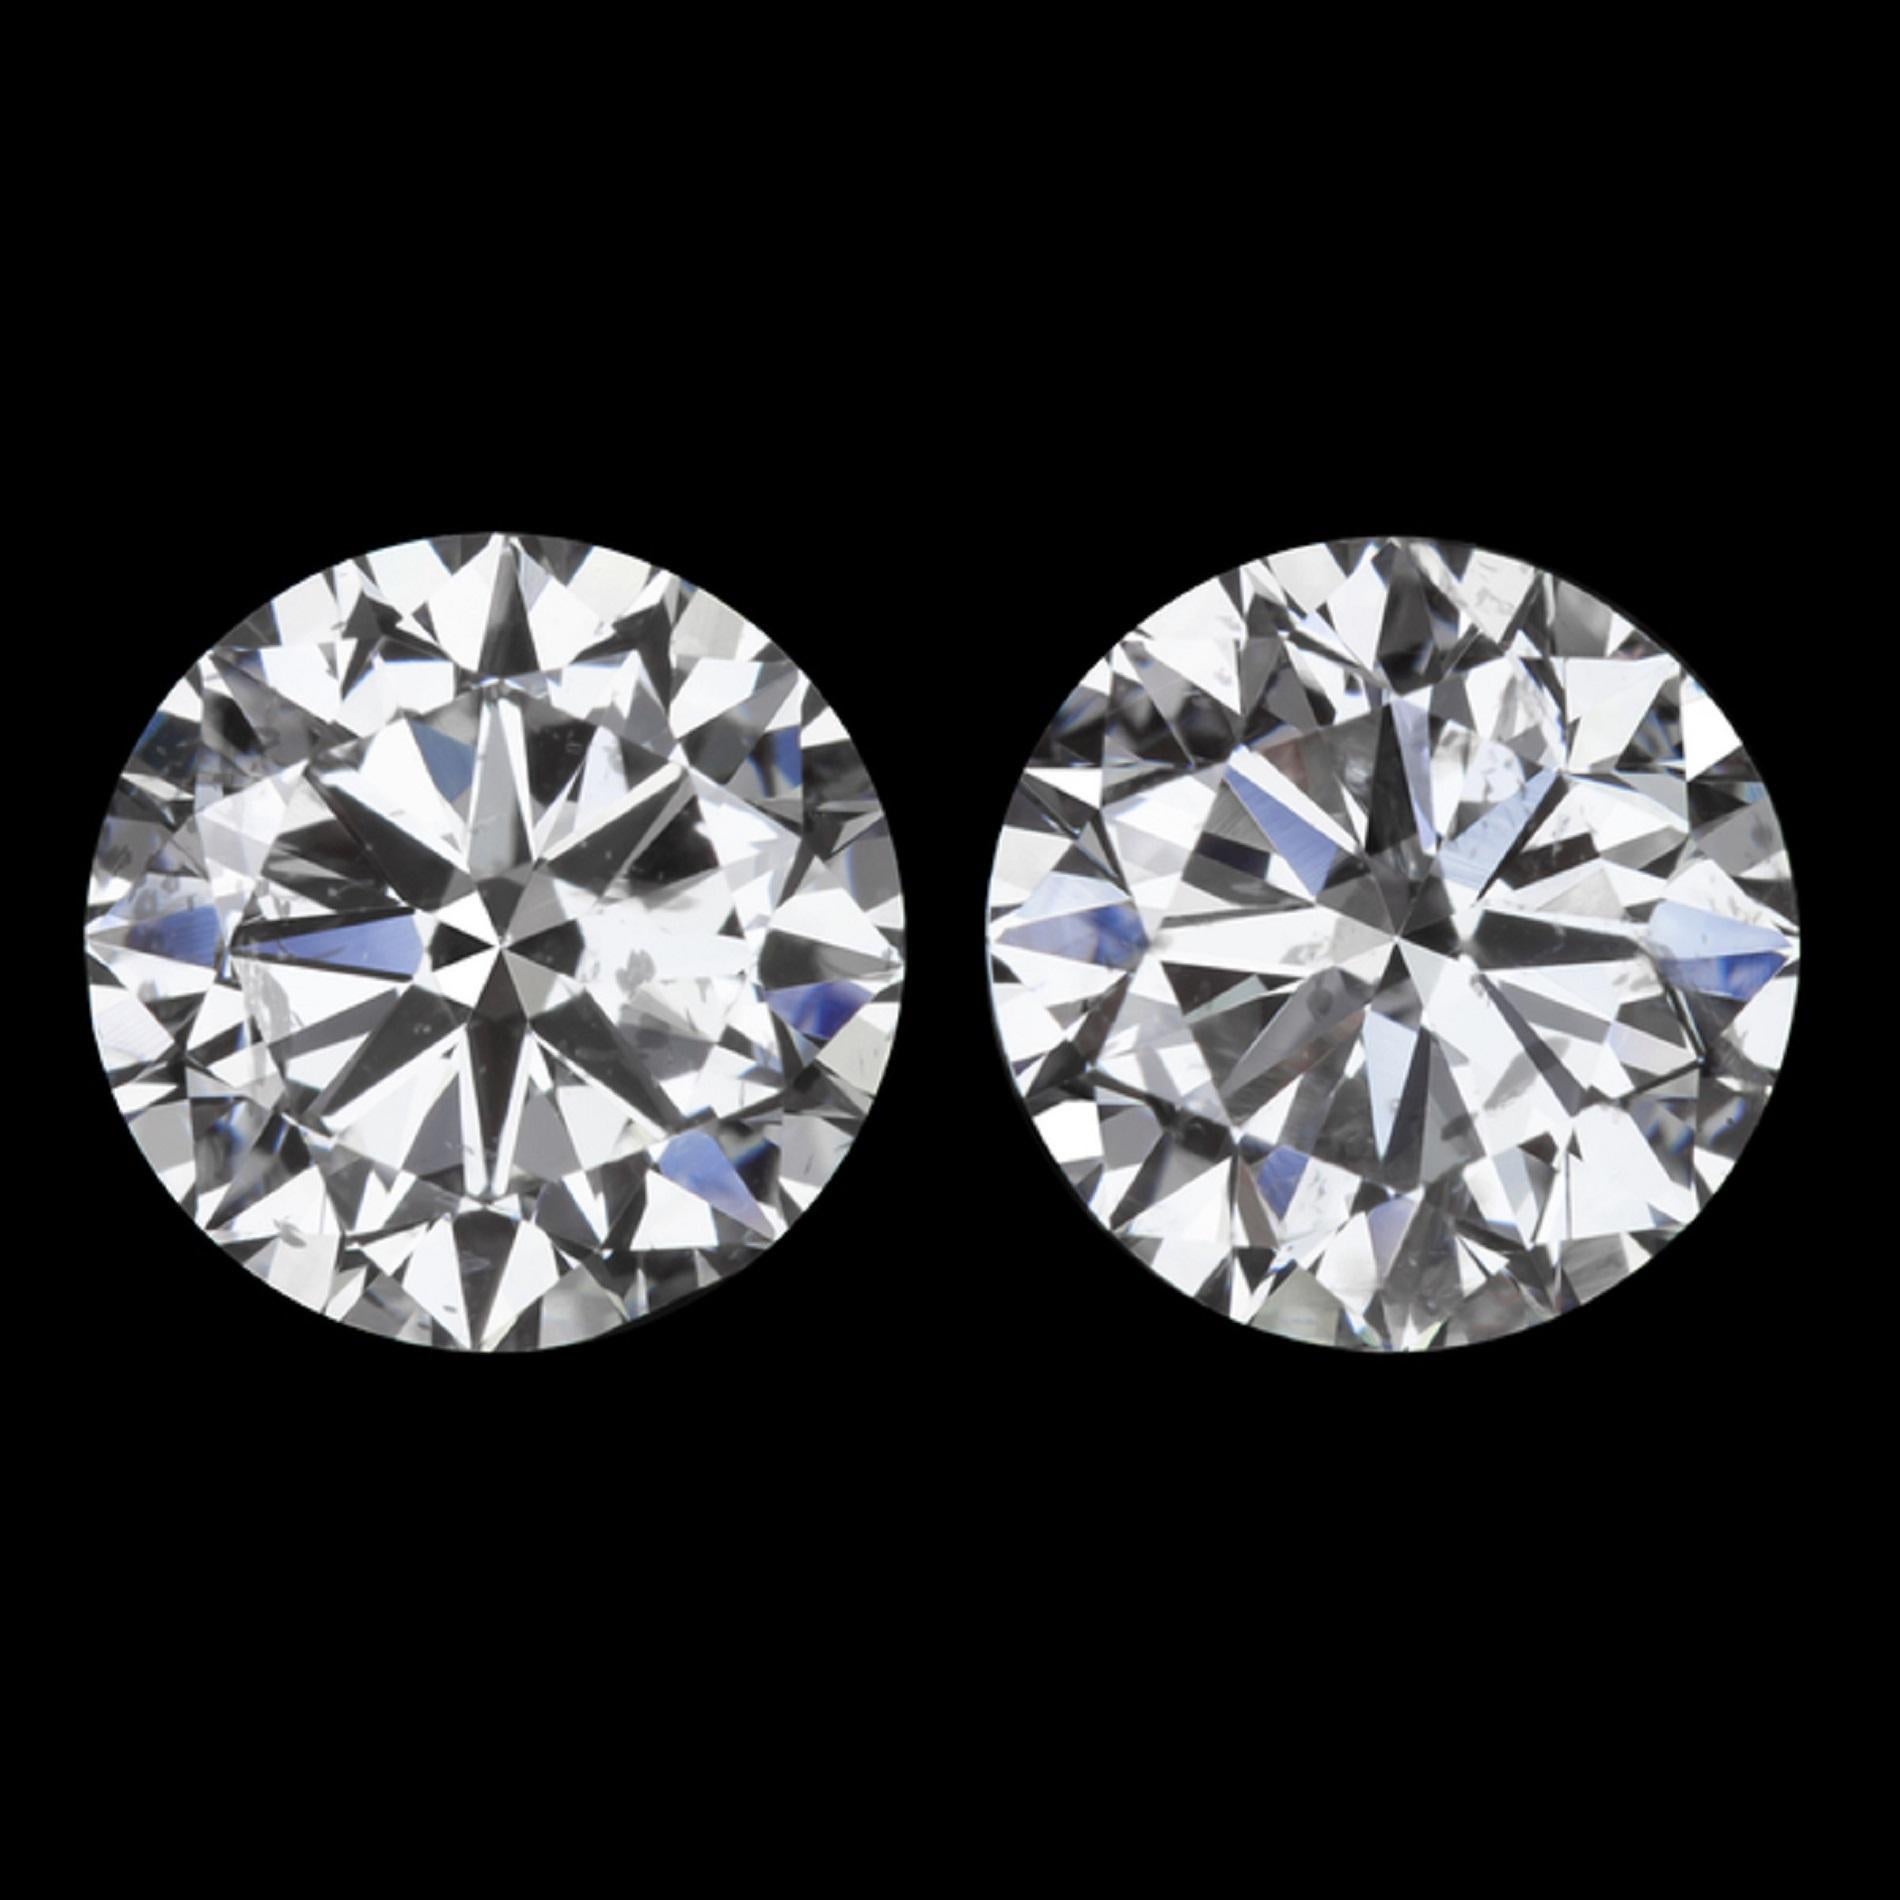 Zertifizierte natürliche 2 Karat D Farbe Rund Brillantschliff Diamant Ohrstecker
100% augenrein, da VS1
extrem weiße und kristallklare Diamanten
In massivem Platin gefasst